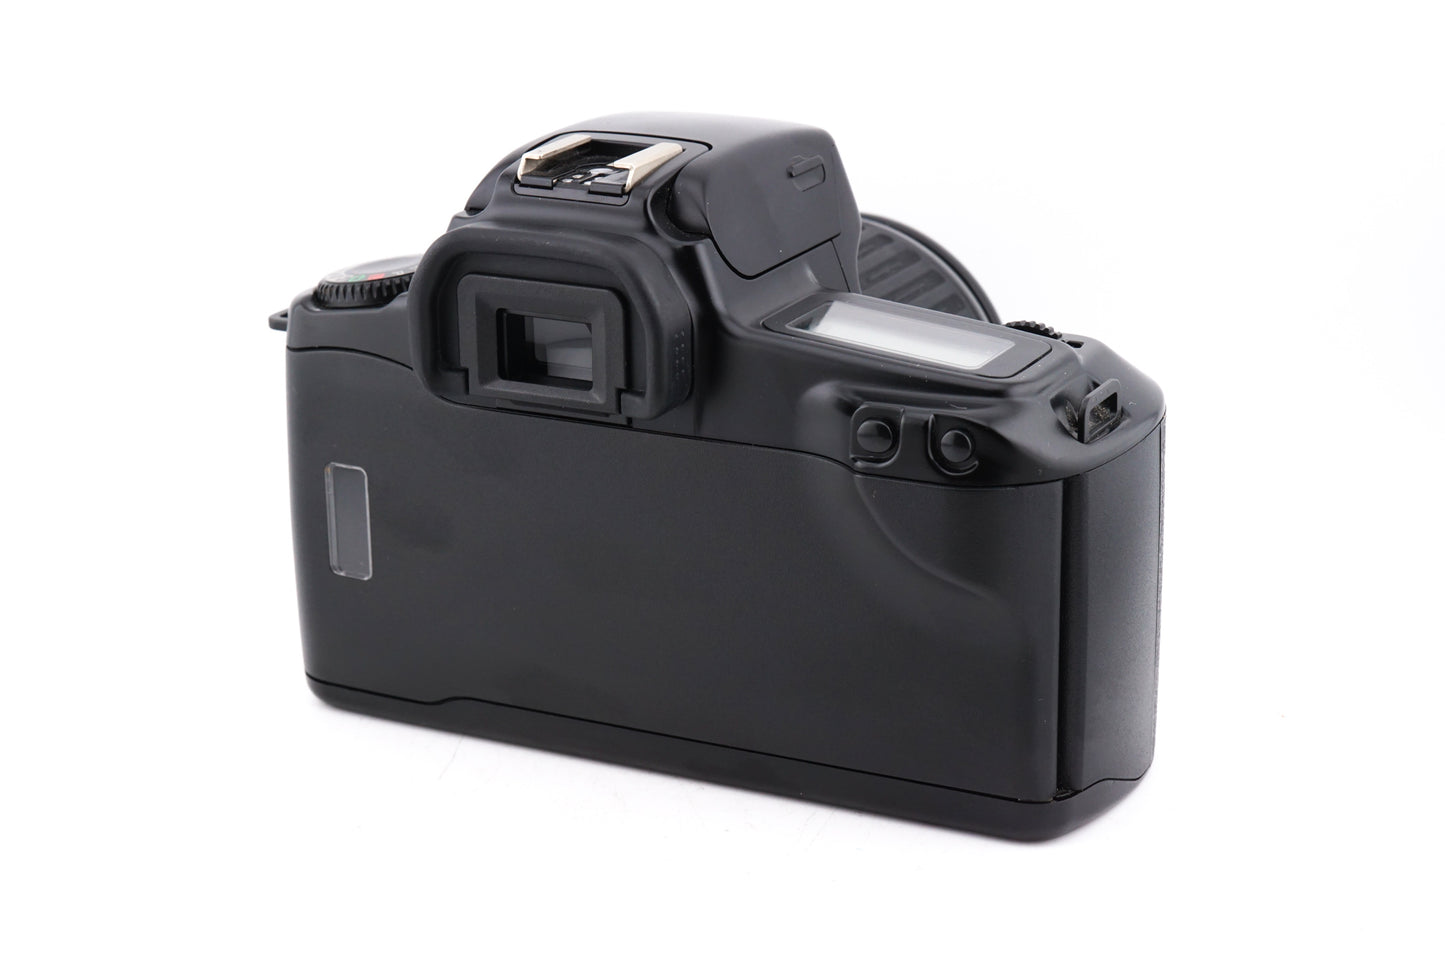 Canon EOS 1000F + 35-80mm f4-5.6